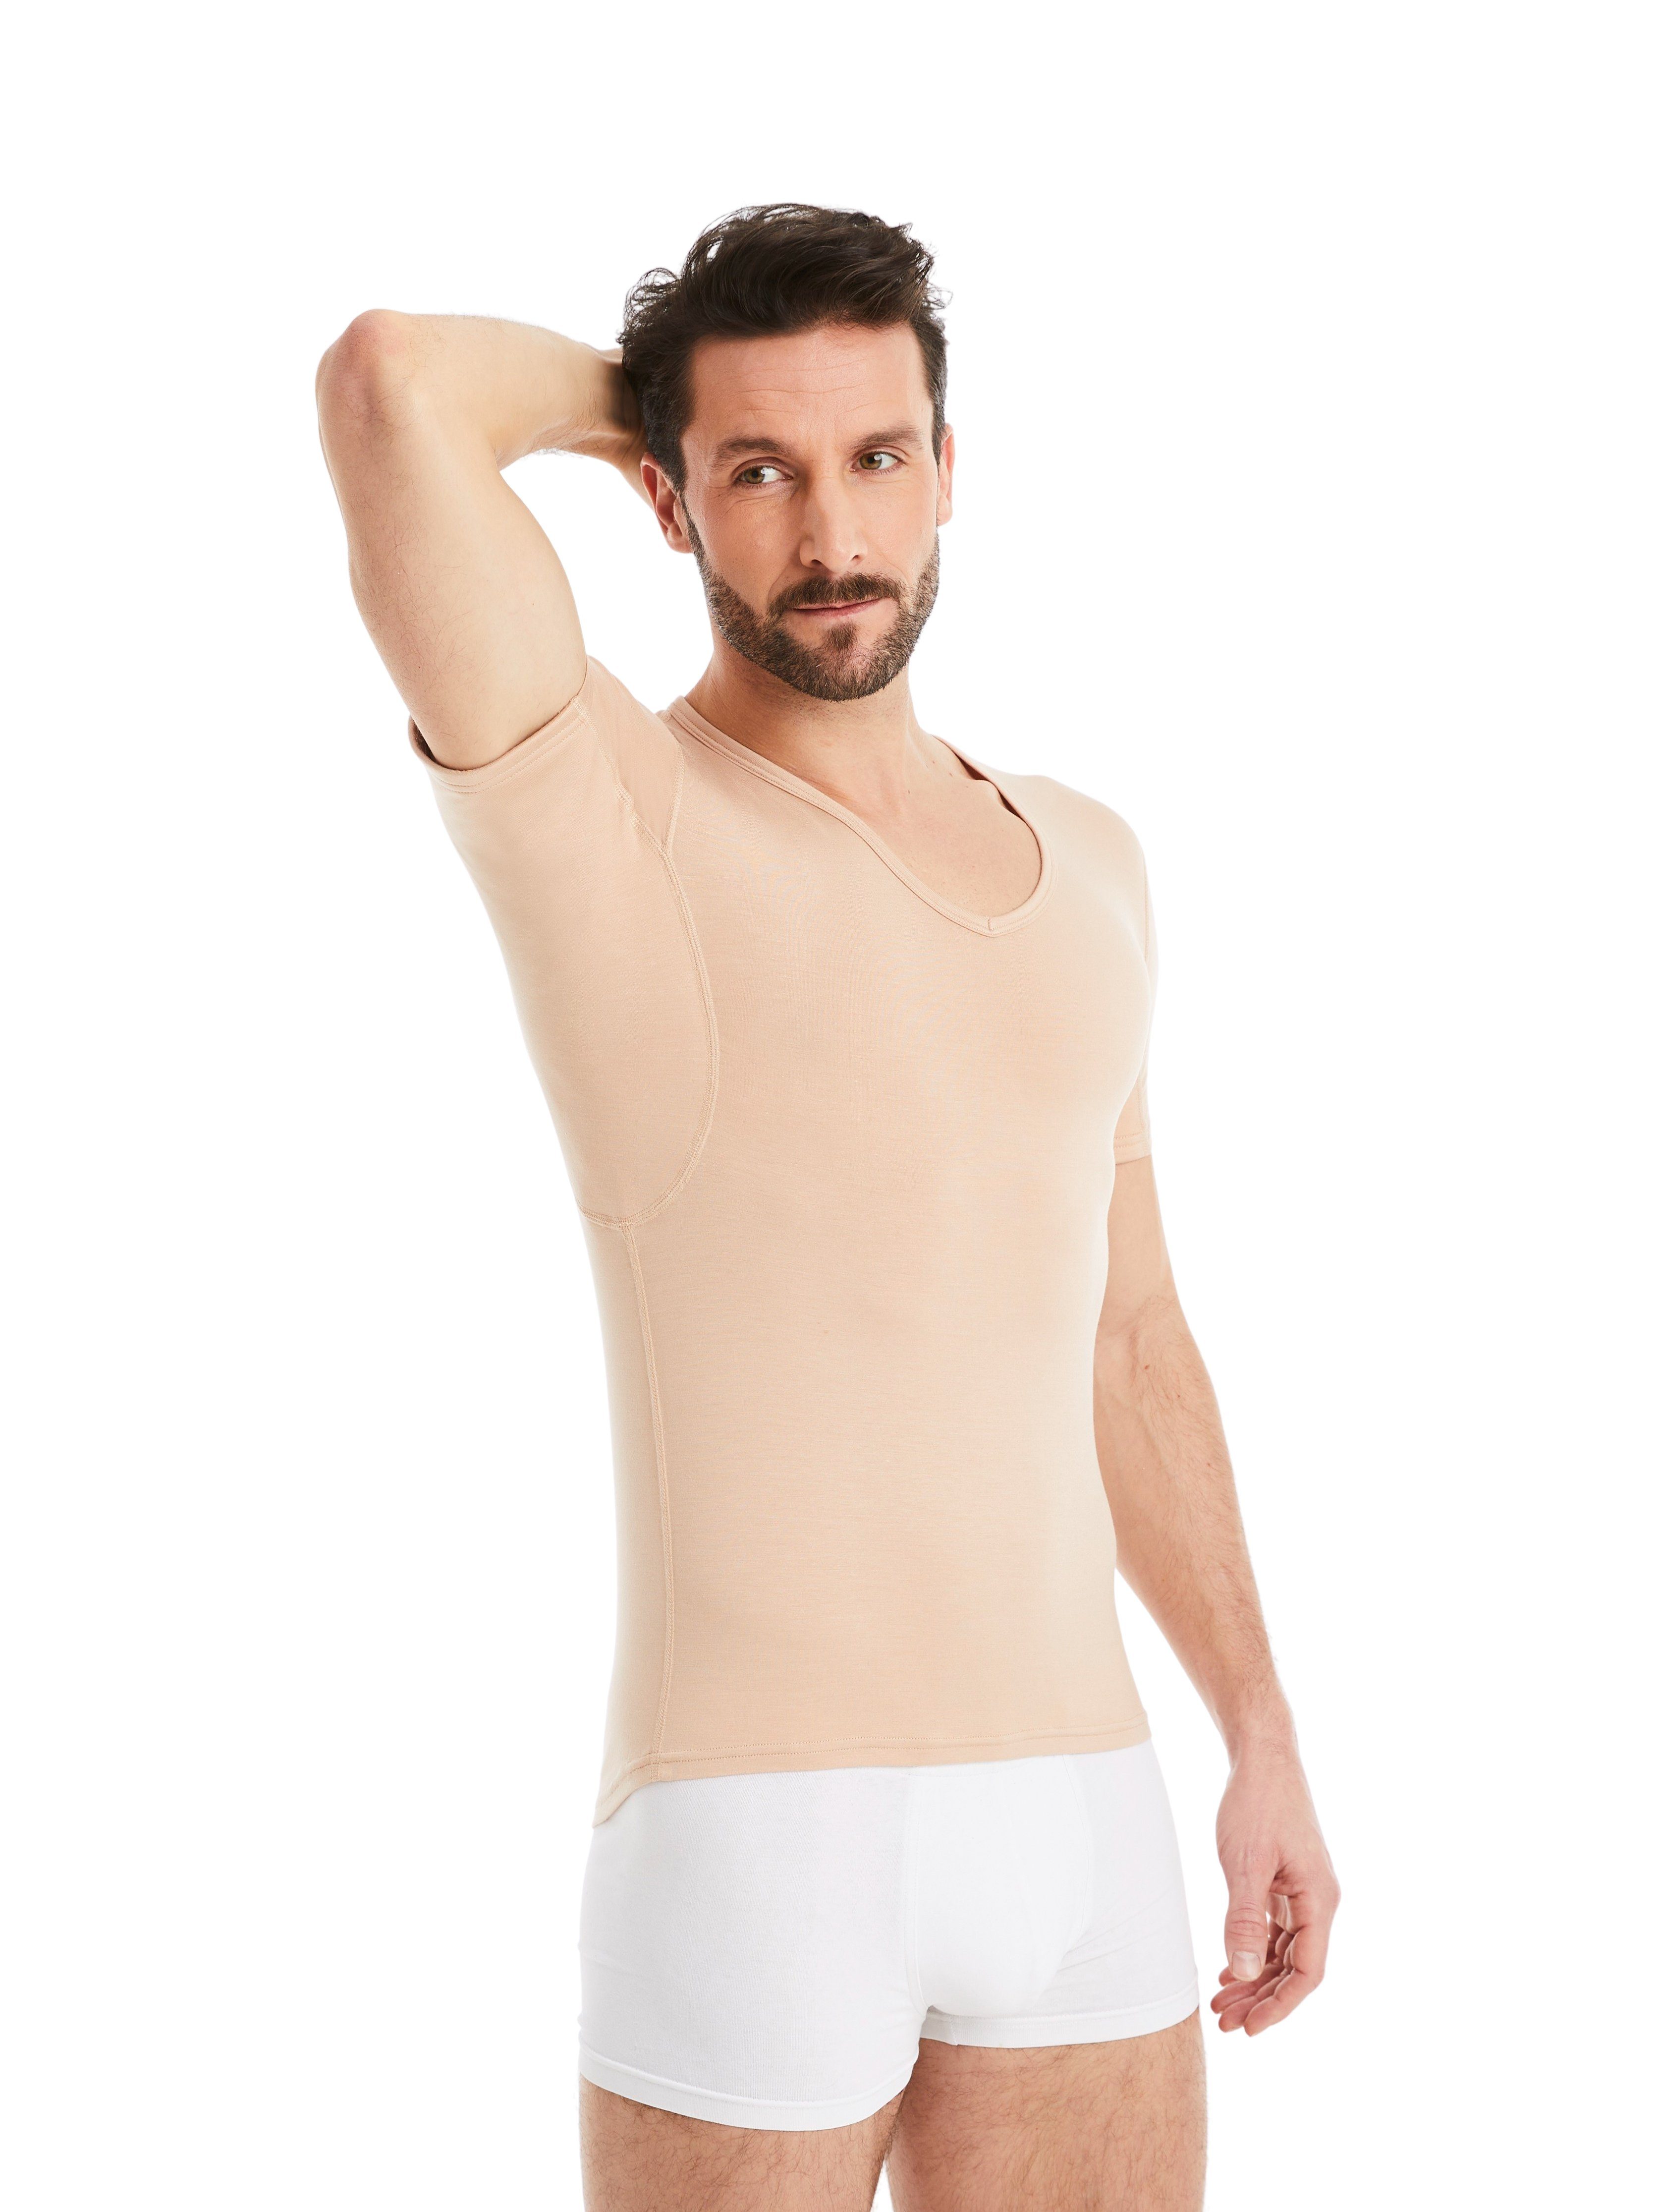 FINN Design Unterhemd Anti-Schweiß Unterhemd Herren 100% Schutz vor Schweißflecken, garantierte Wirkung Light-Beige